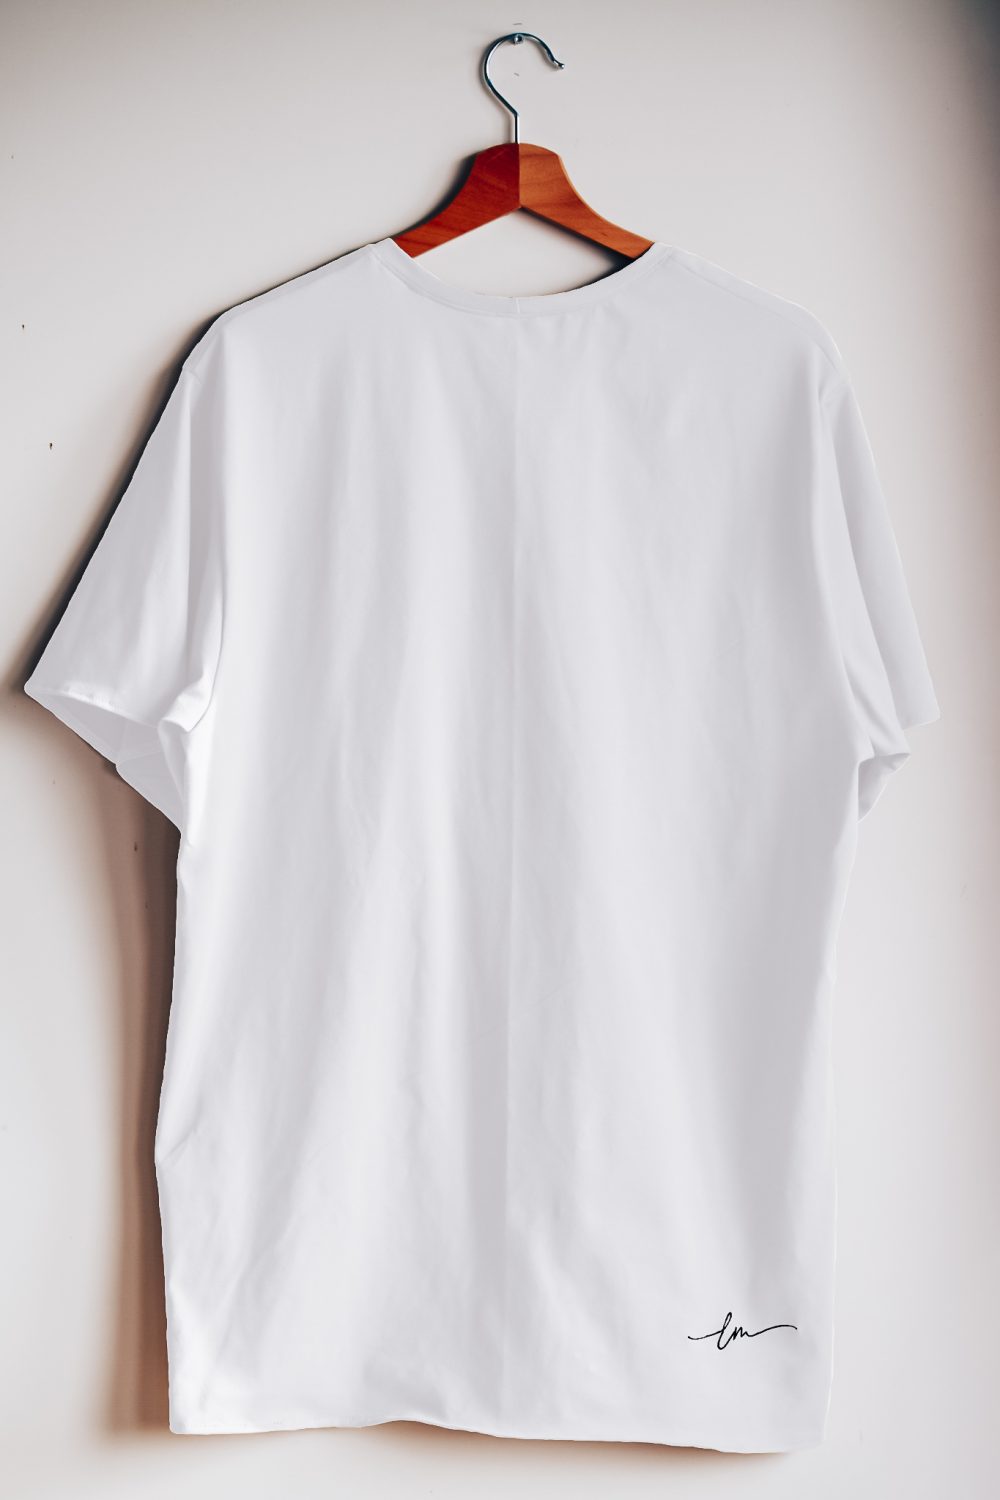 Tee-shirt Personnalisé - Ma musique - Blanc/noir - Léa Maïe Clothing